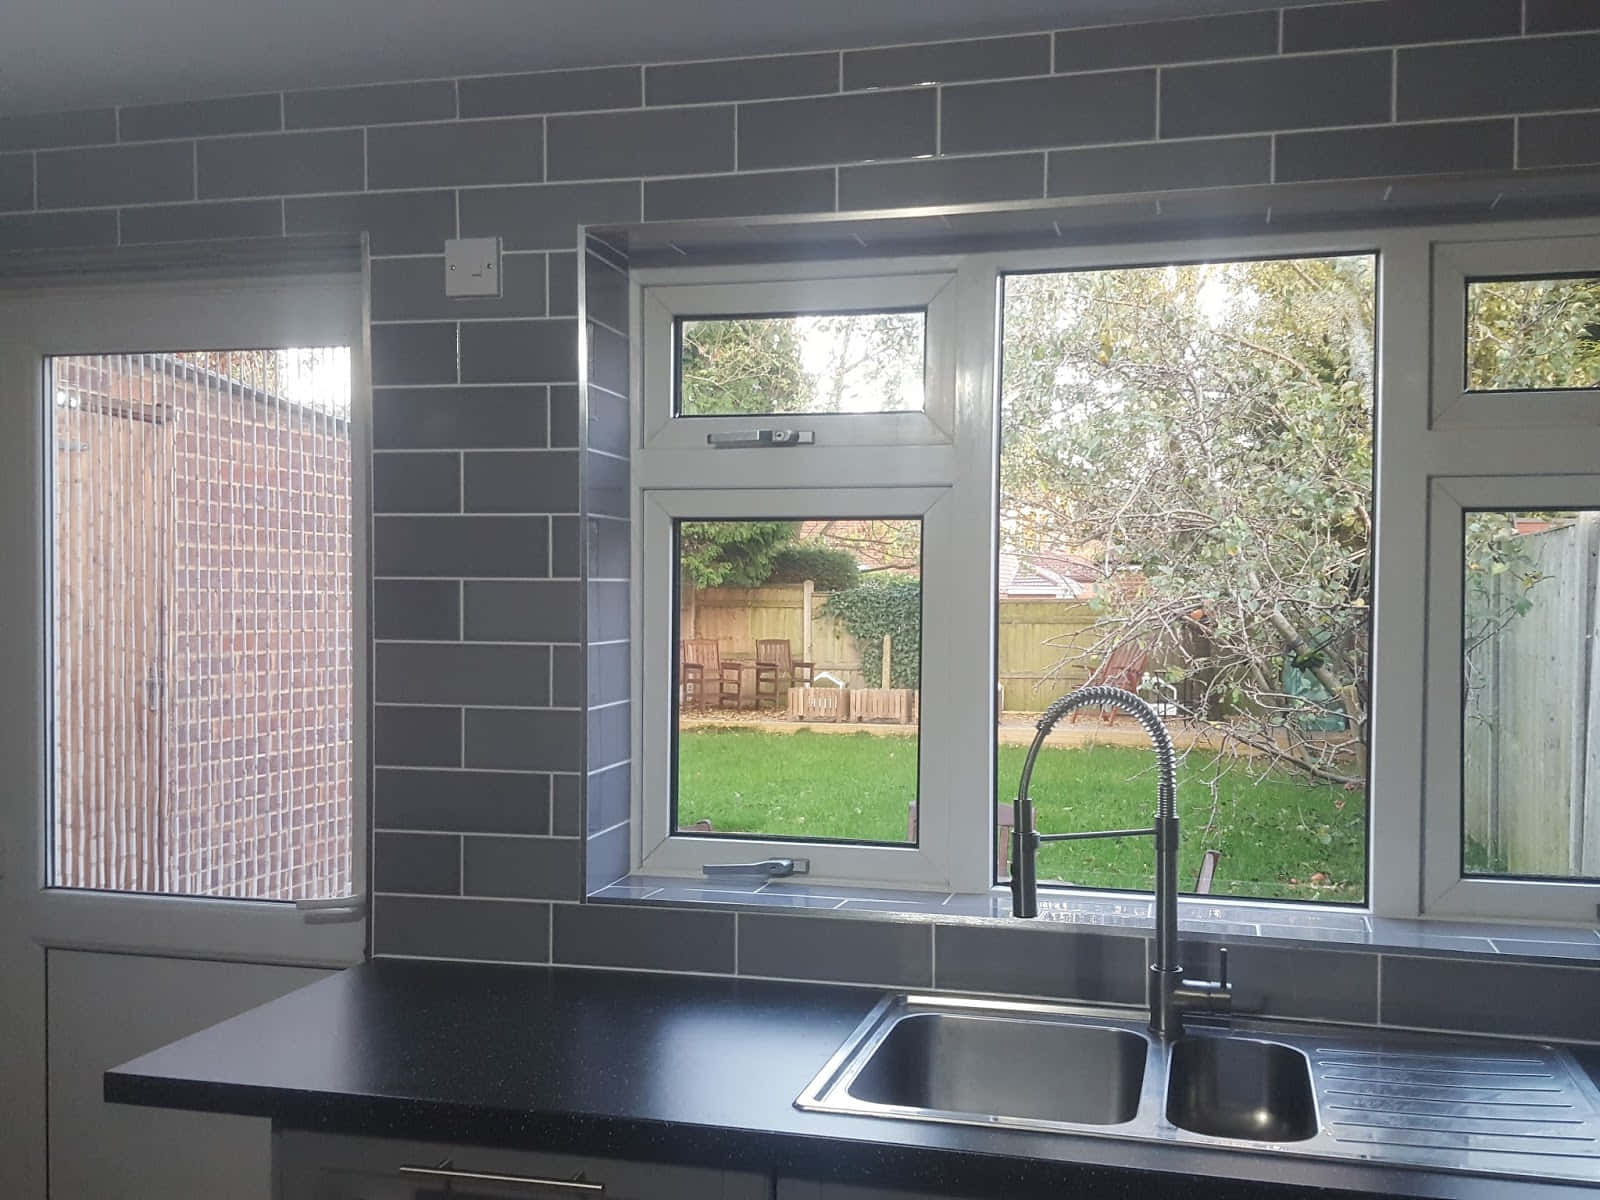 Kitchen Window Bricks Picture